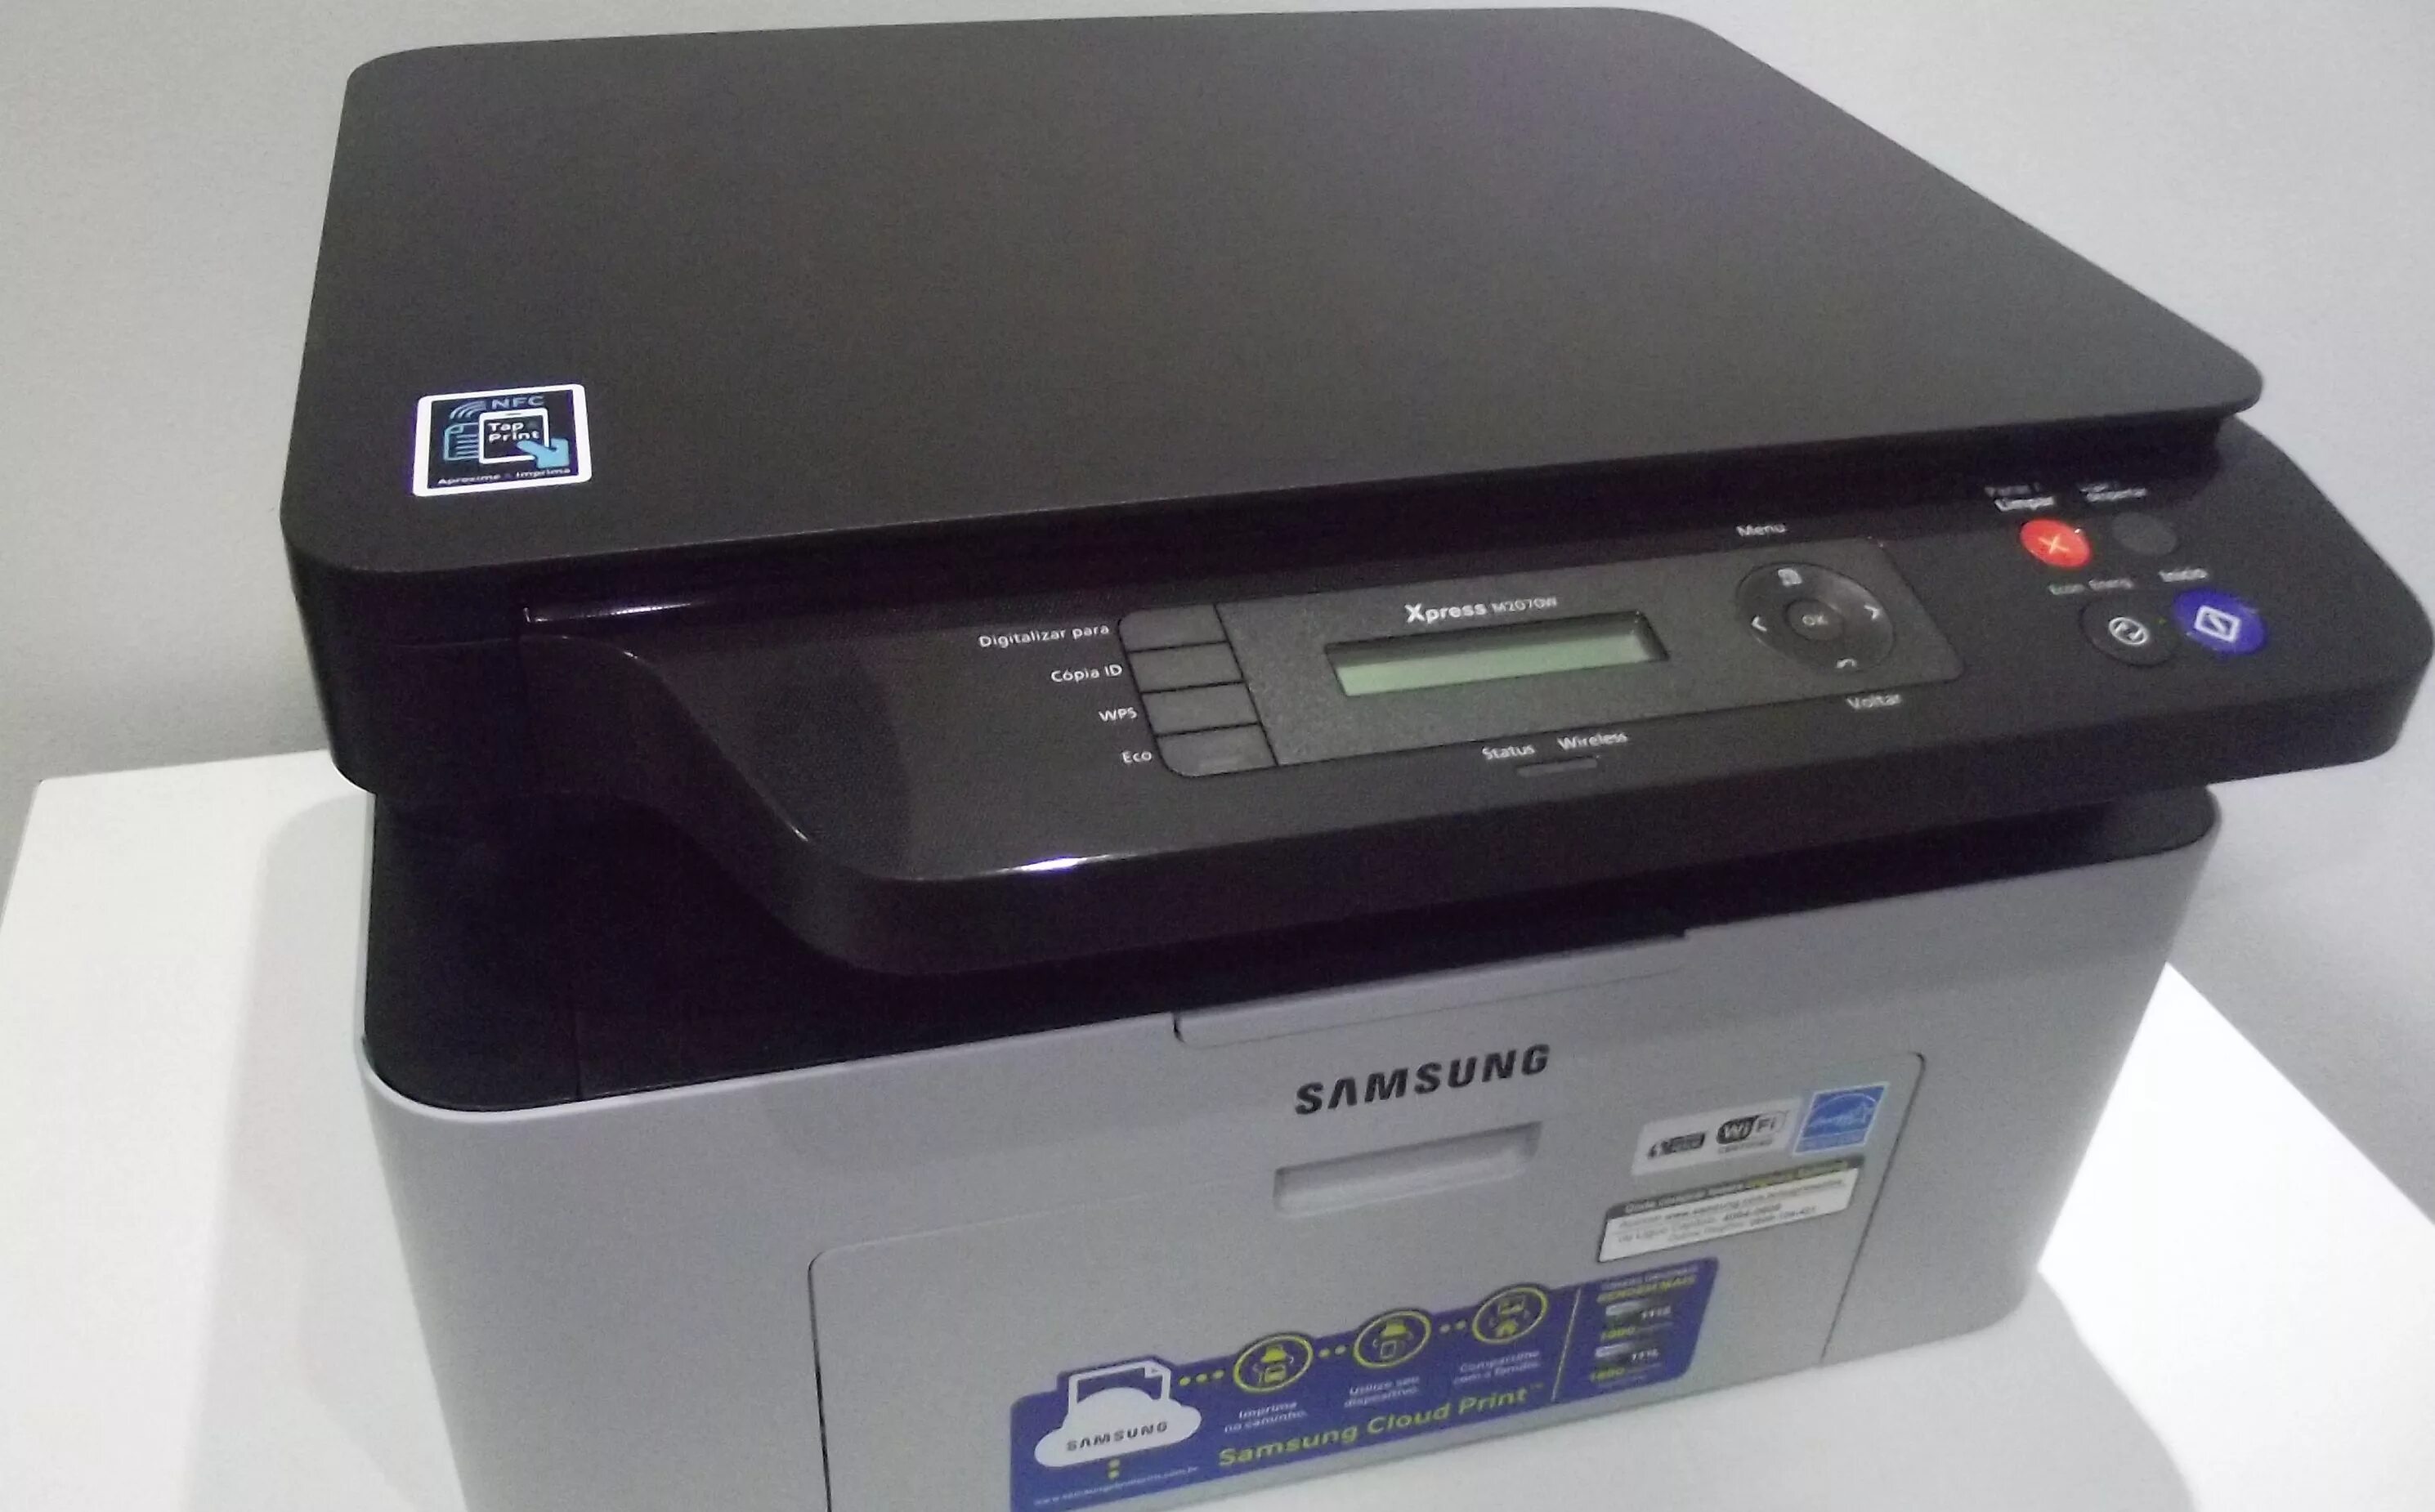 Принтер самсунг 2070w. Принтер самсунг Express m2070. Принтер Samsung m2070 Series. Принтер самсунг Xpress m2070w. Samsung m2070 series драйвер